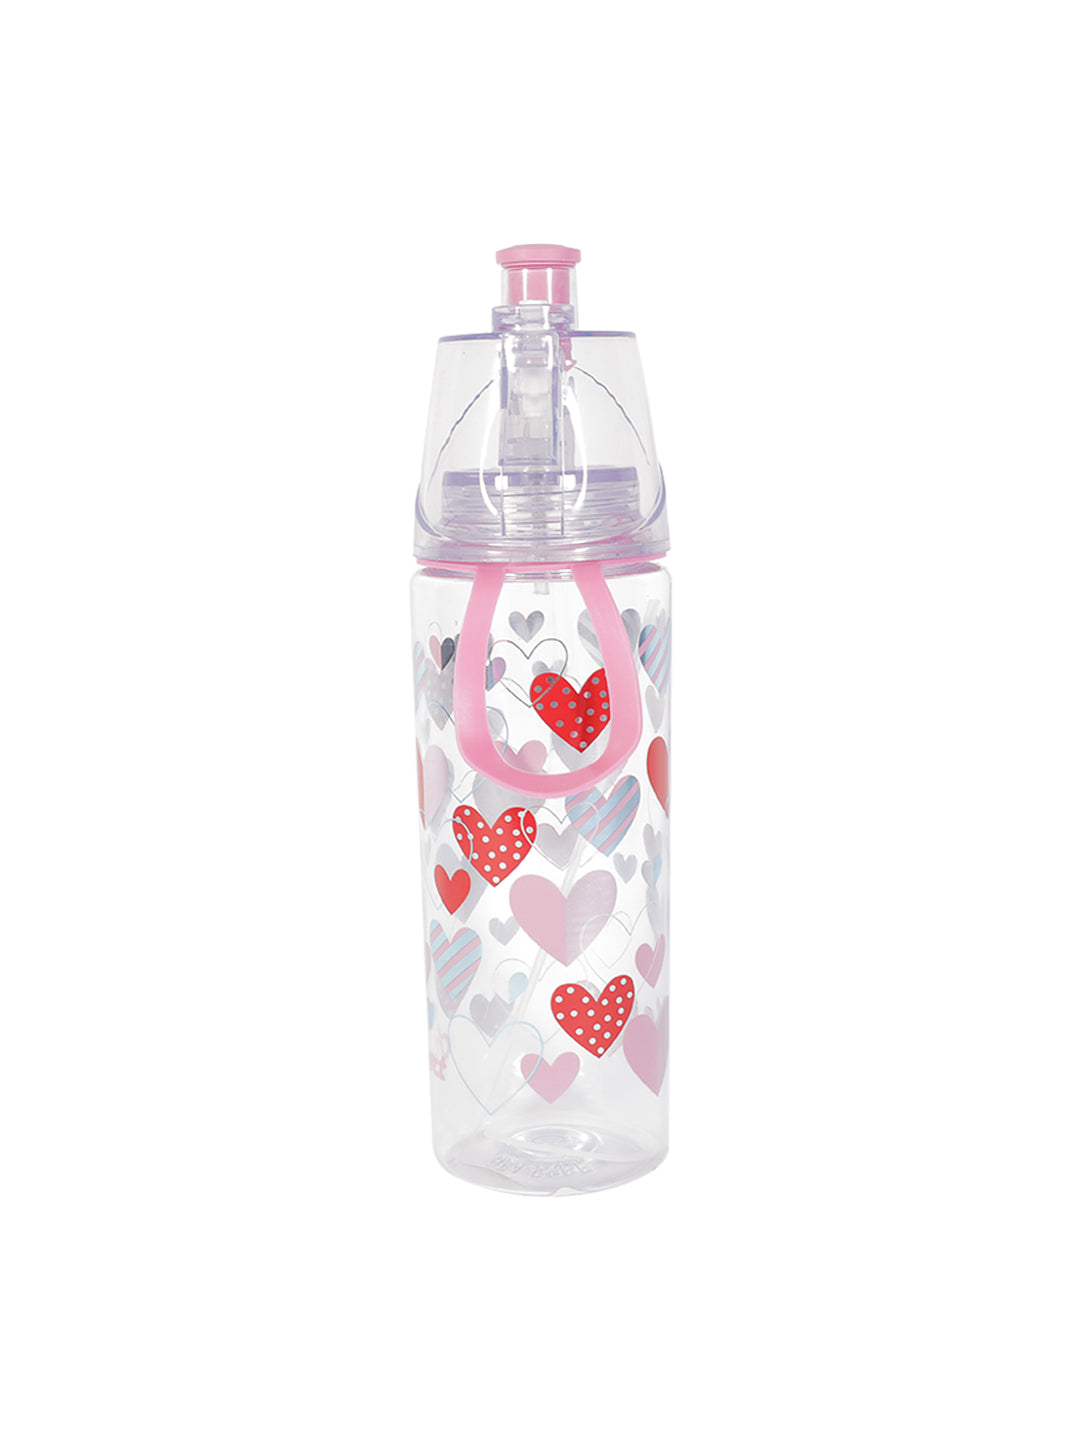 VON CASA Transparent Plastic Water Bottles - Pink, 500Ml